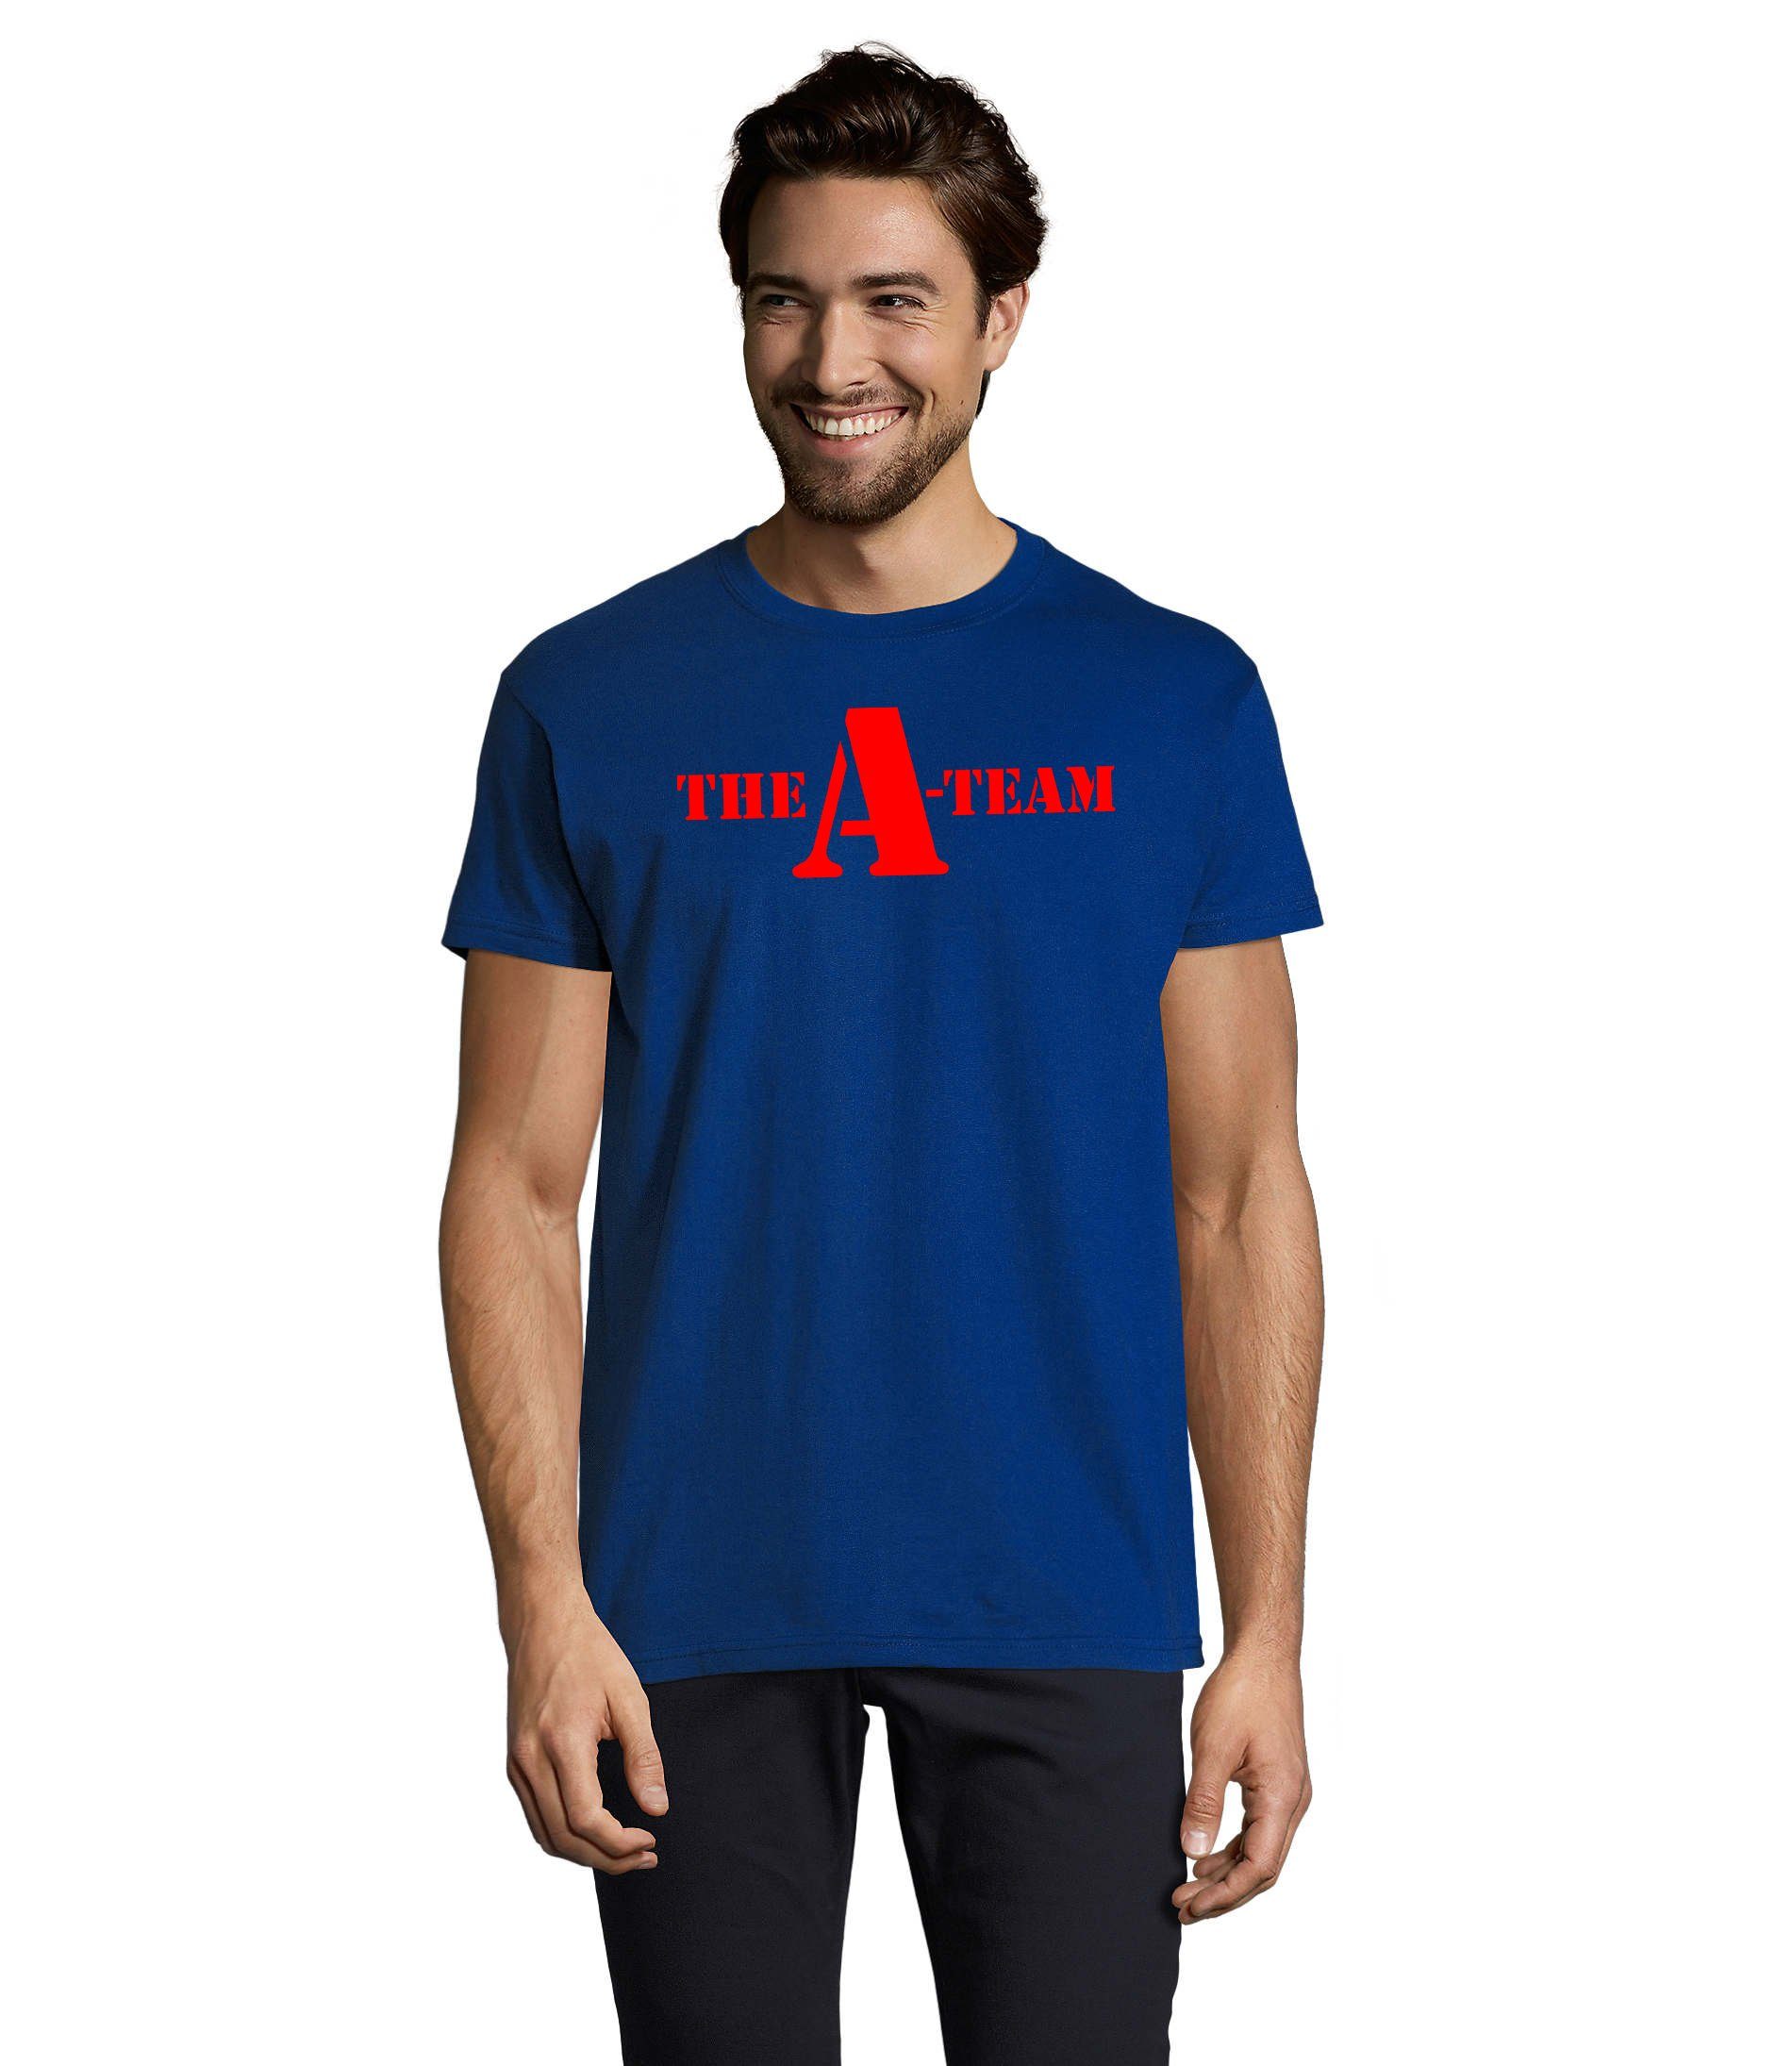 Blondie & Brownie T-Shirt Herren A Team Logo Print Van Bus Murdock Hannibal Serie Blau